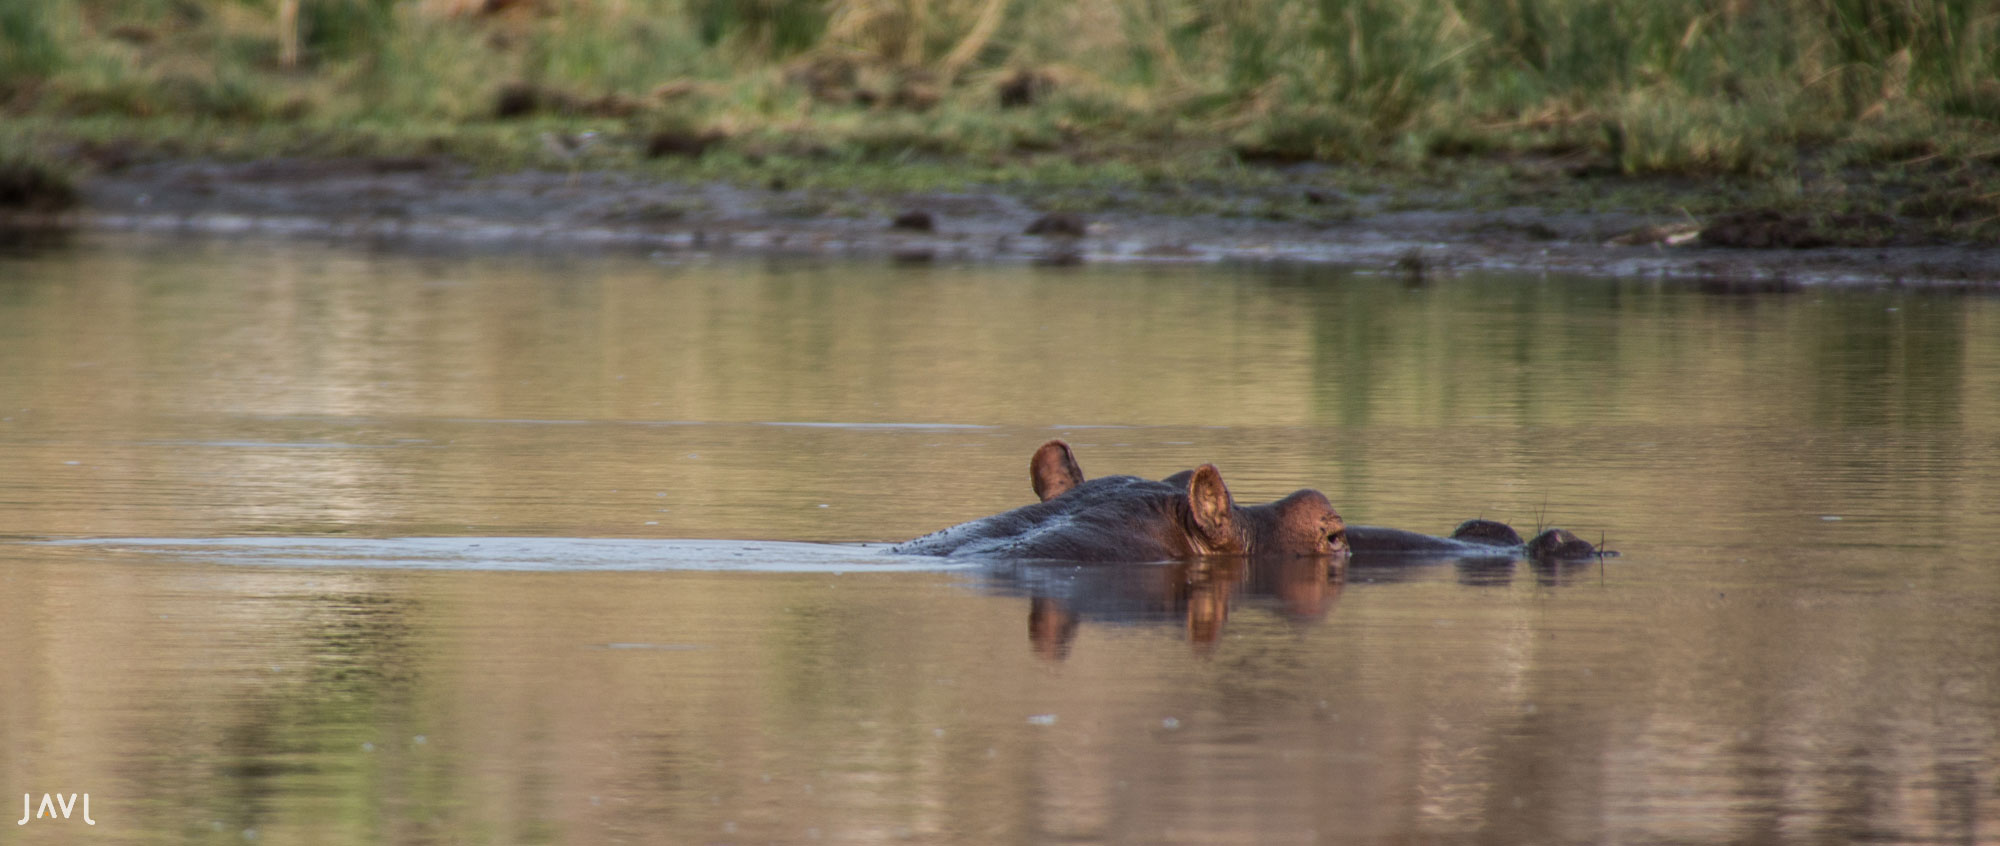 Hipopótamo asoma la cabeza en el agua